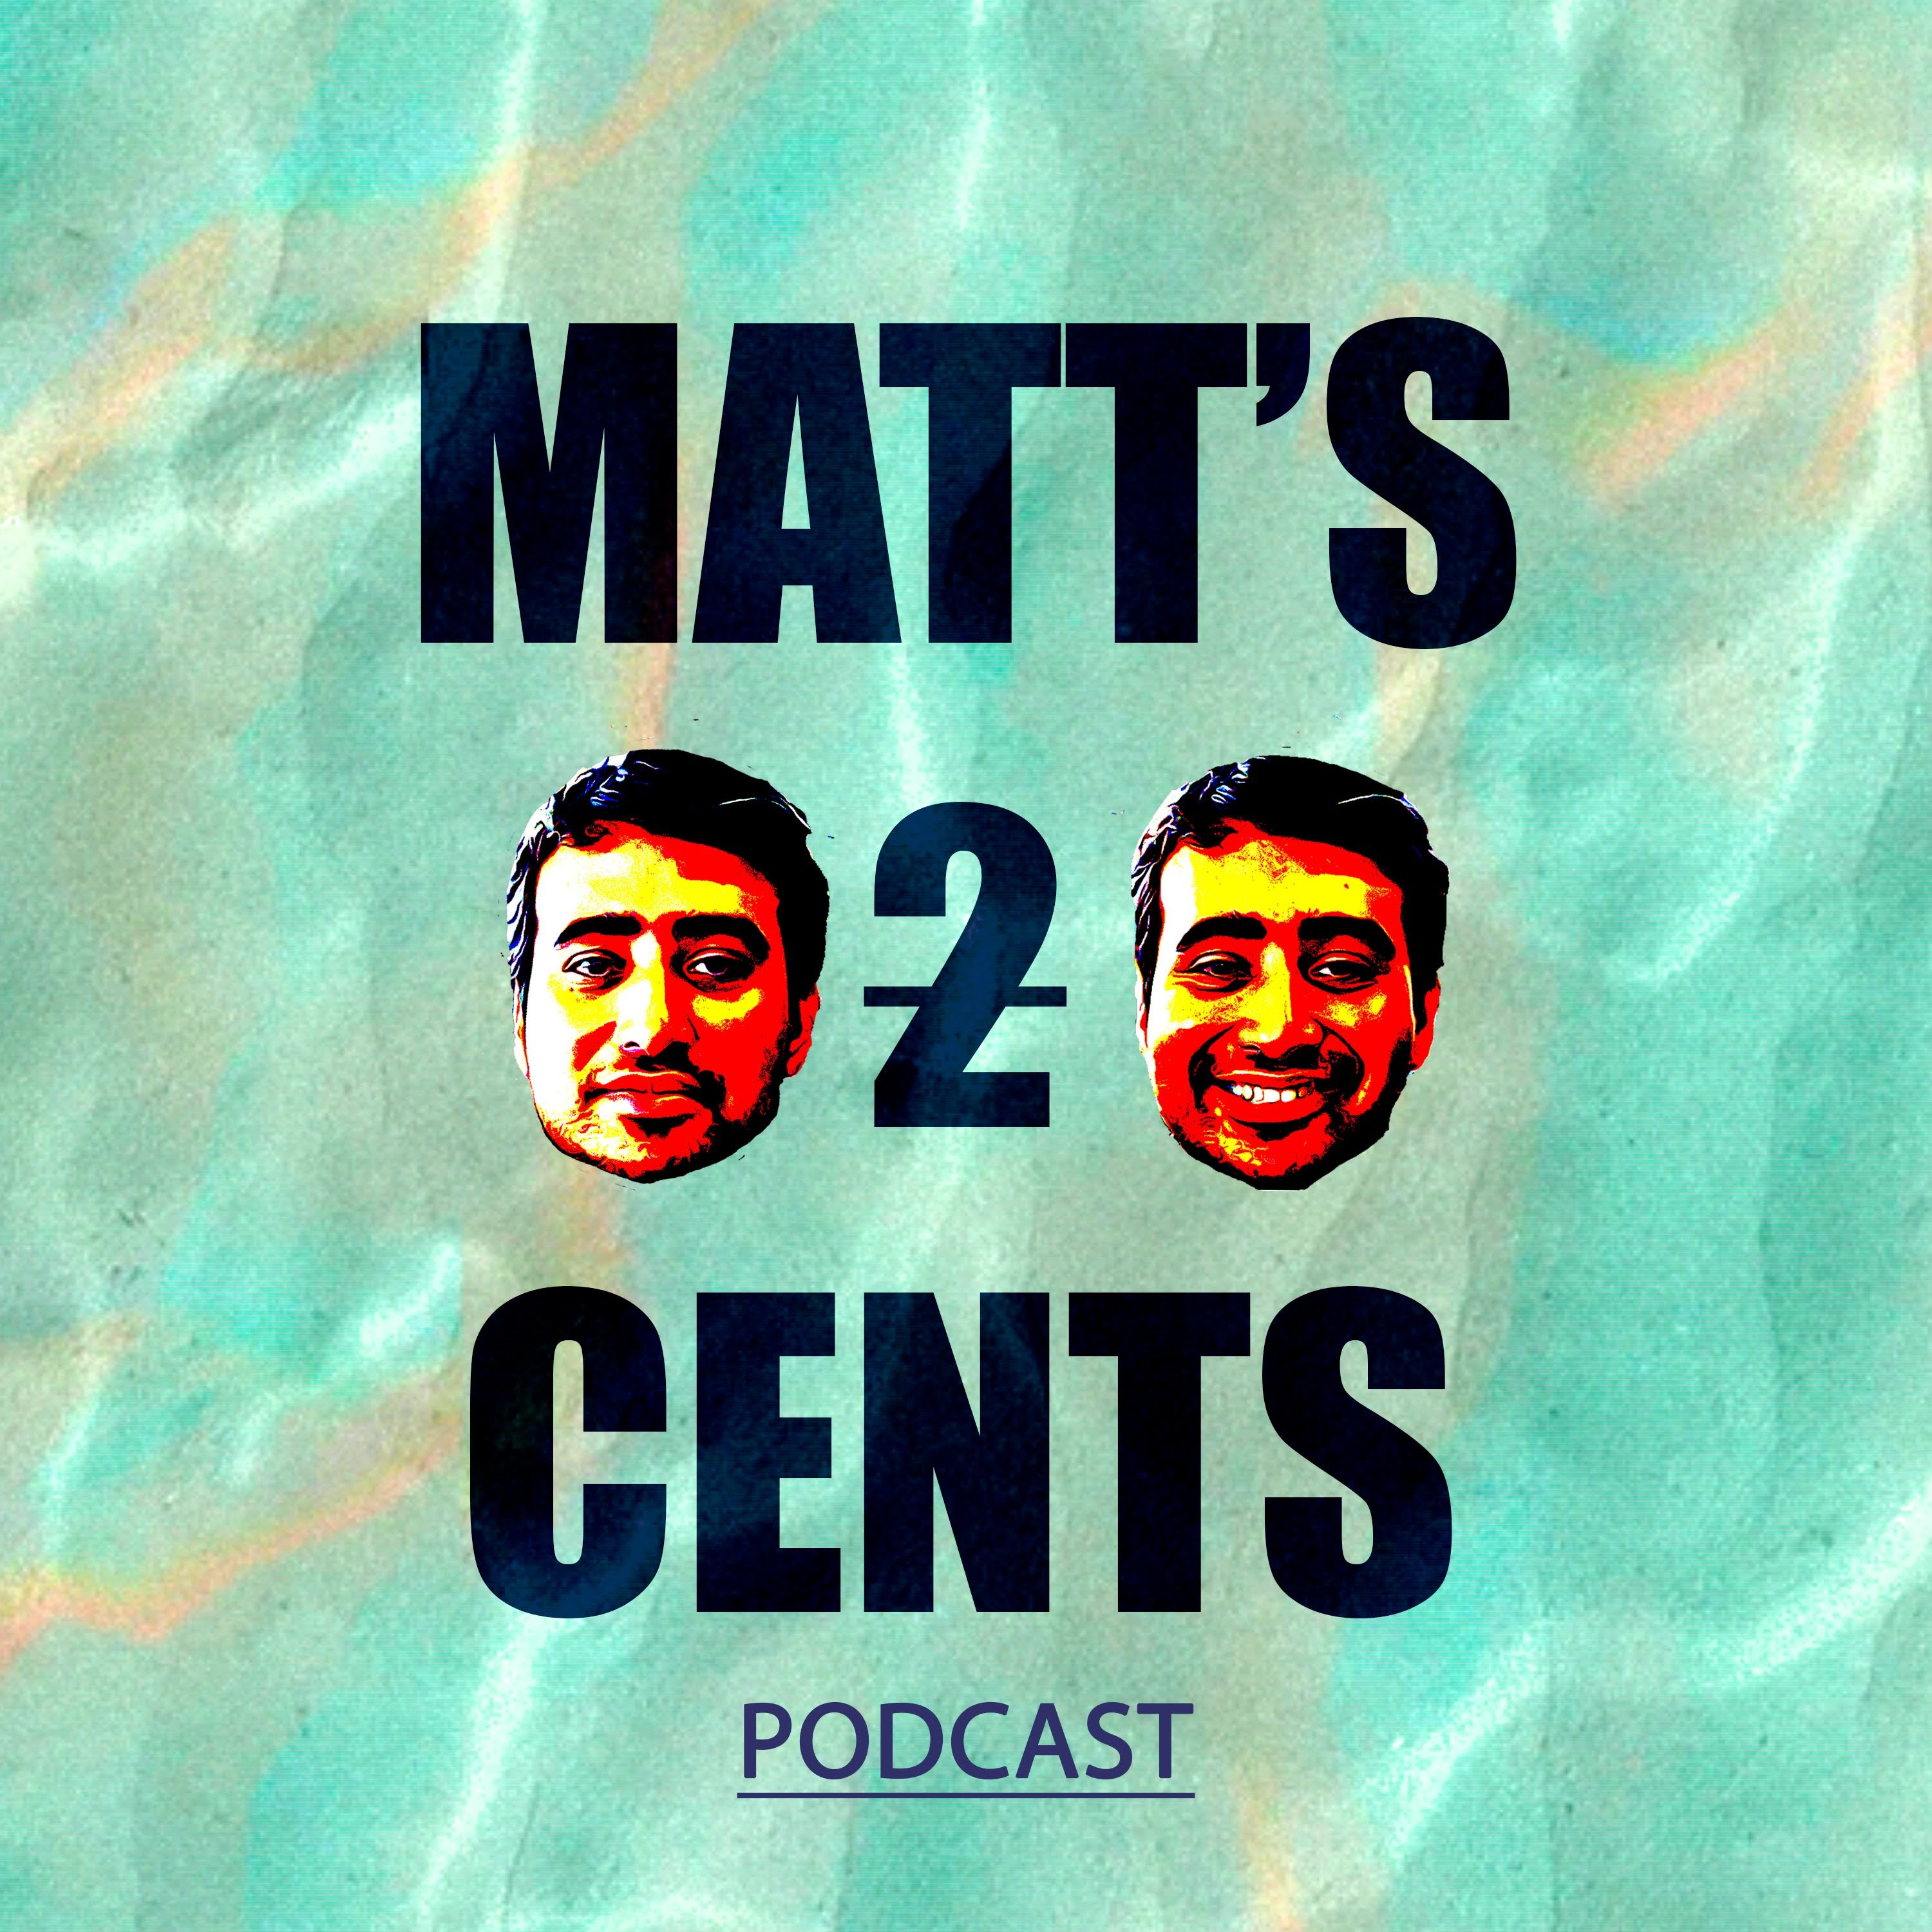 Matt's 2 Cents